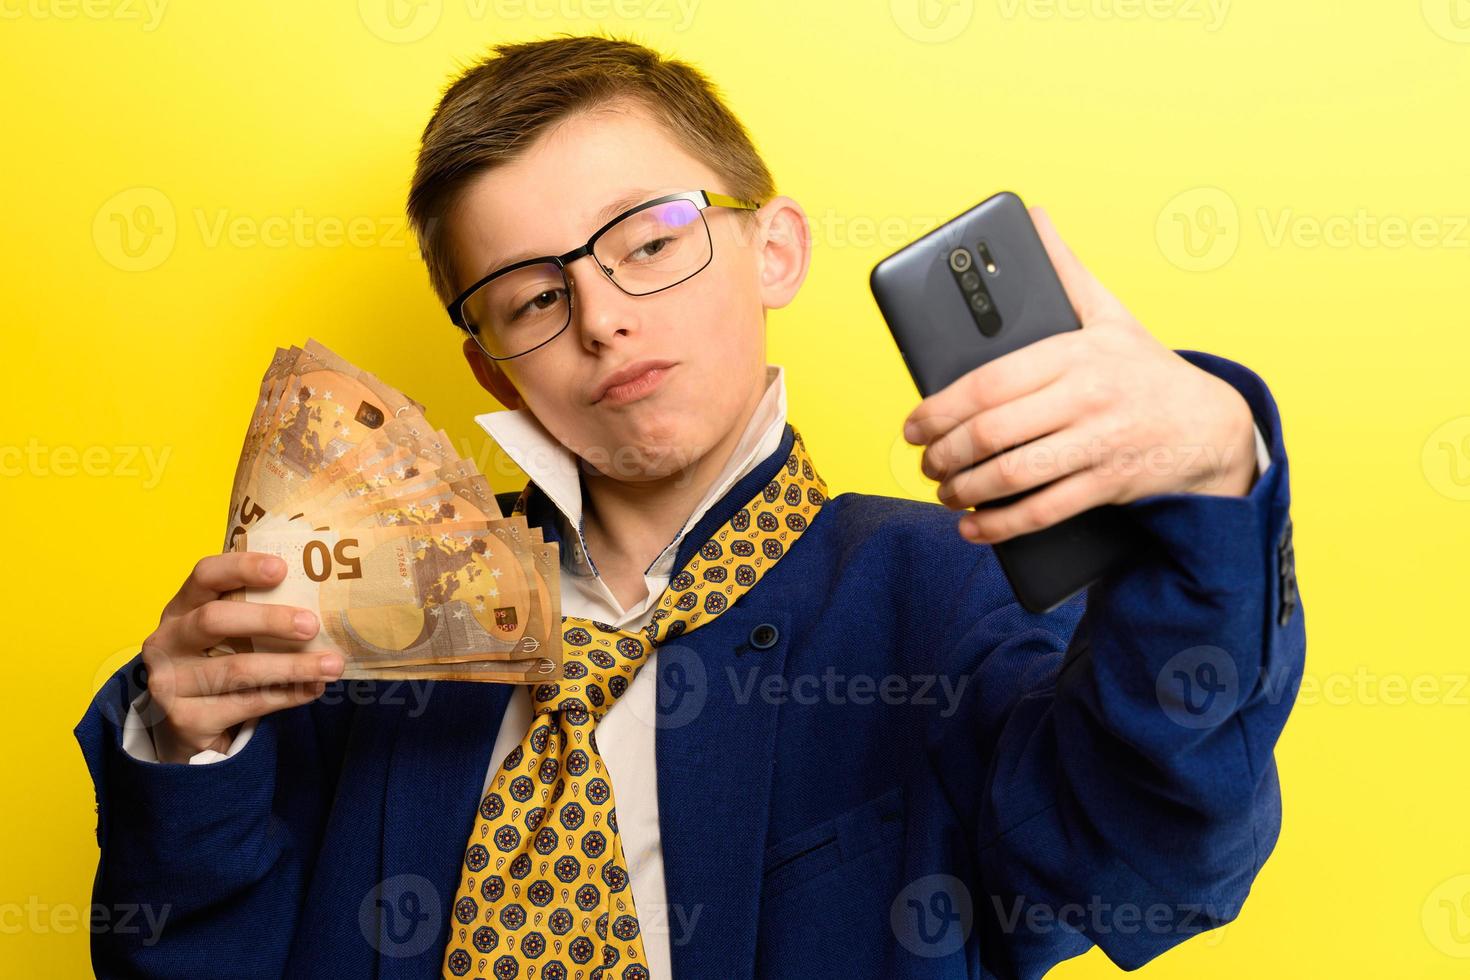 framgångsrikt och rikt barn som tar en selfie med pengar, porträtt av en pojke i kostym på gul bakgrund. foto